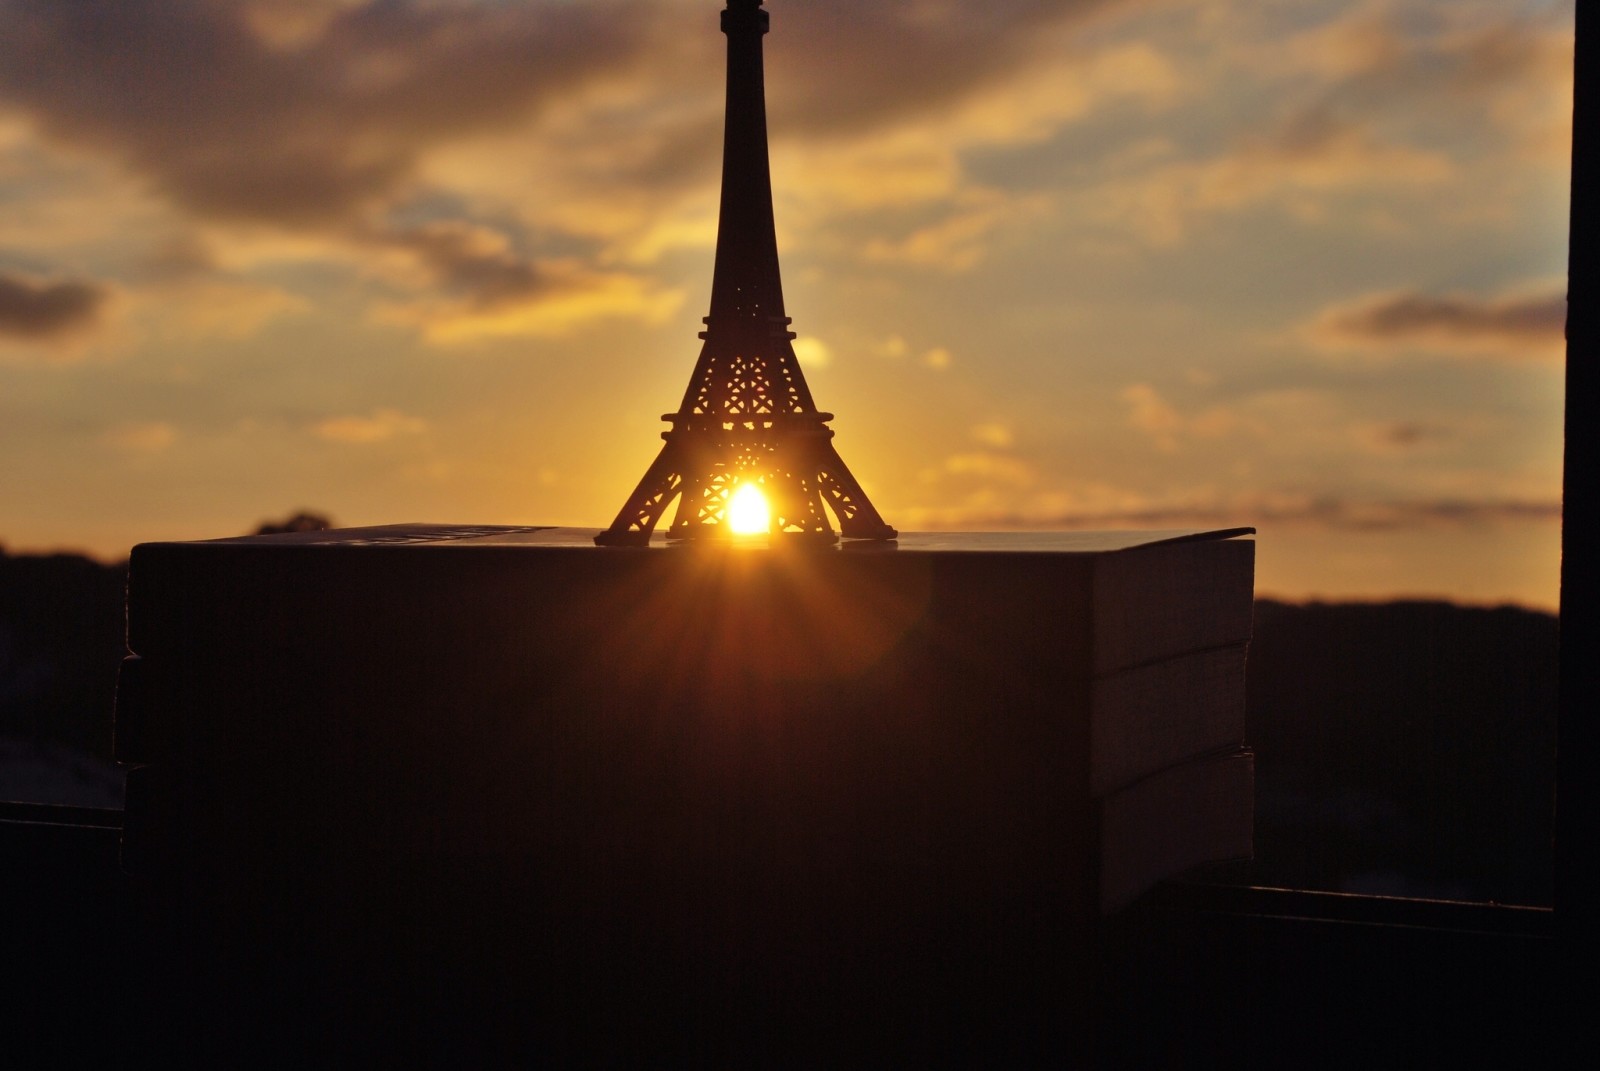 Hoàng hôn, sách, cửa sổ, mặt trời, bức tượng nhỏ, tháp Eiffel, La tour Eiffel